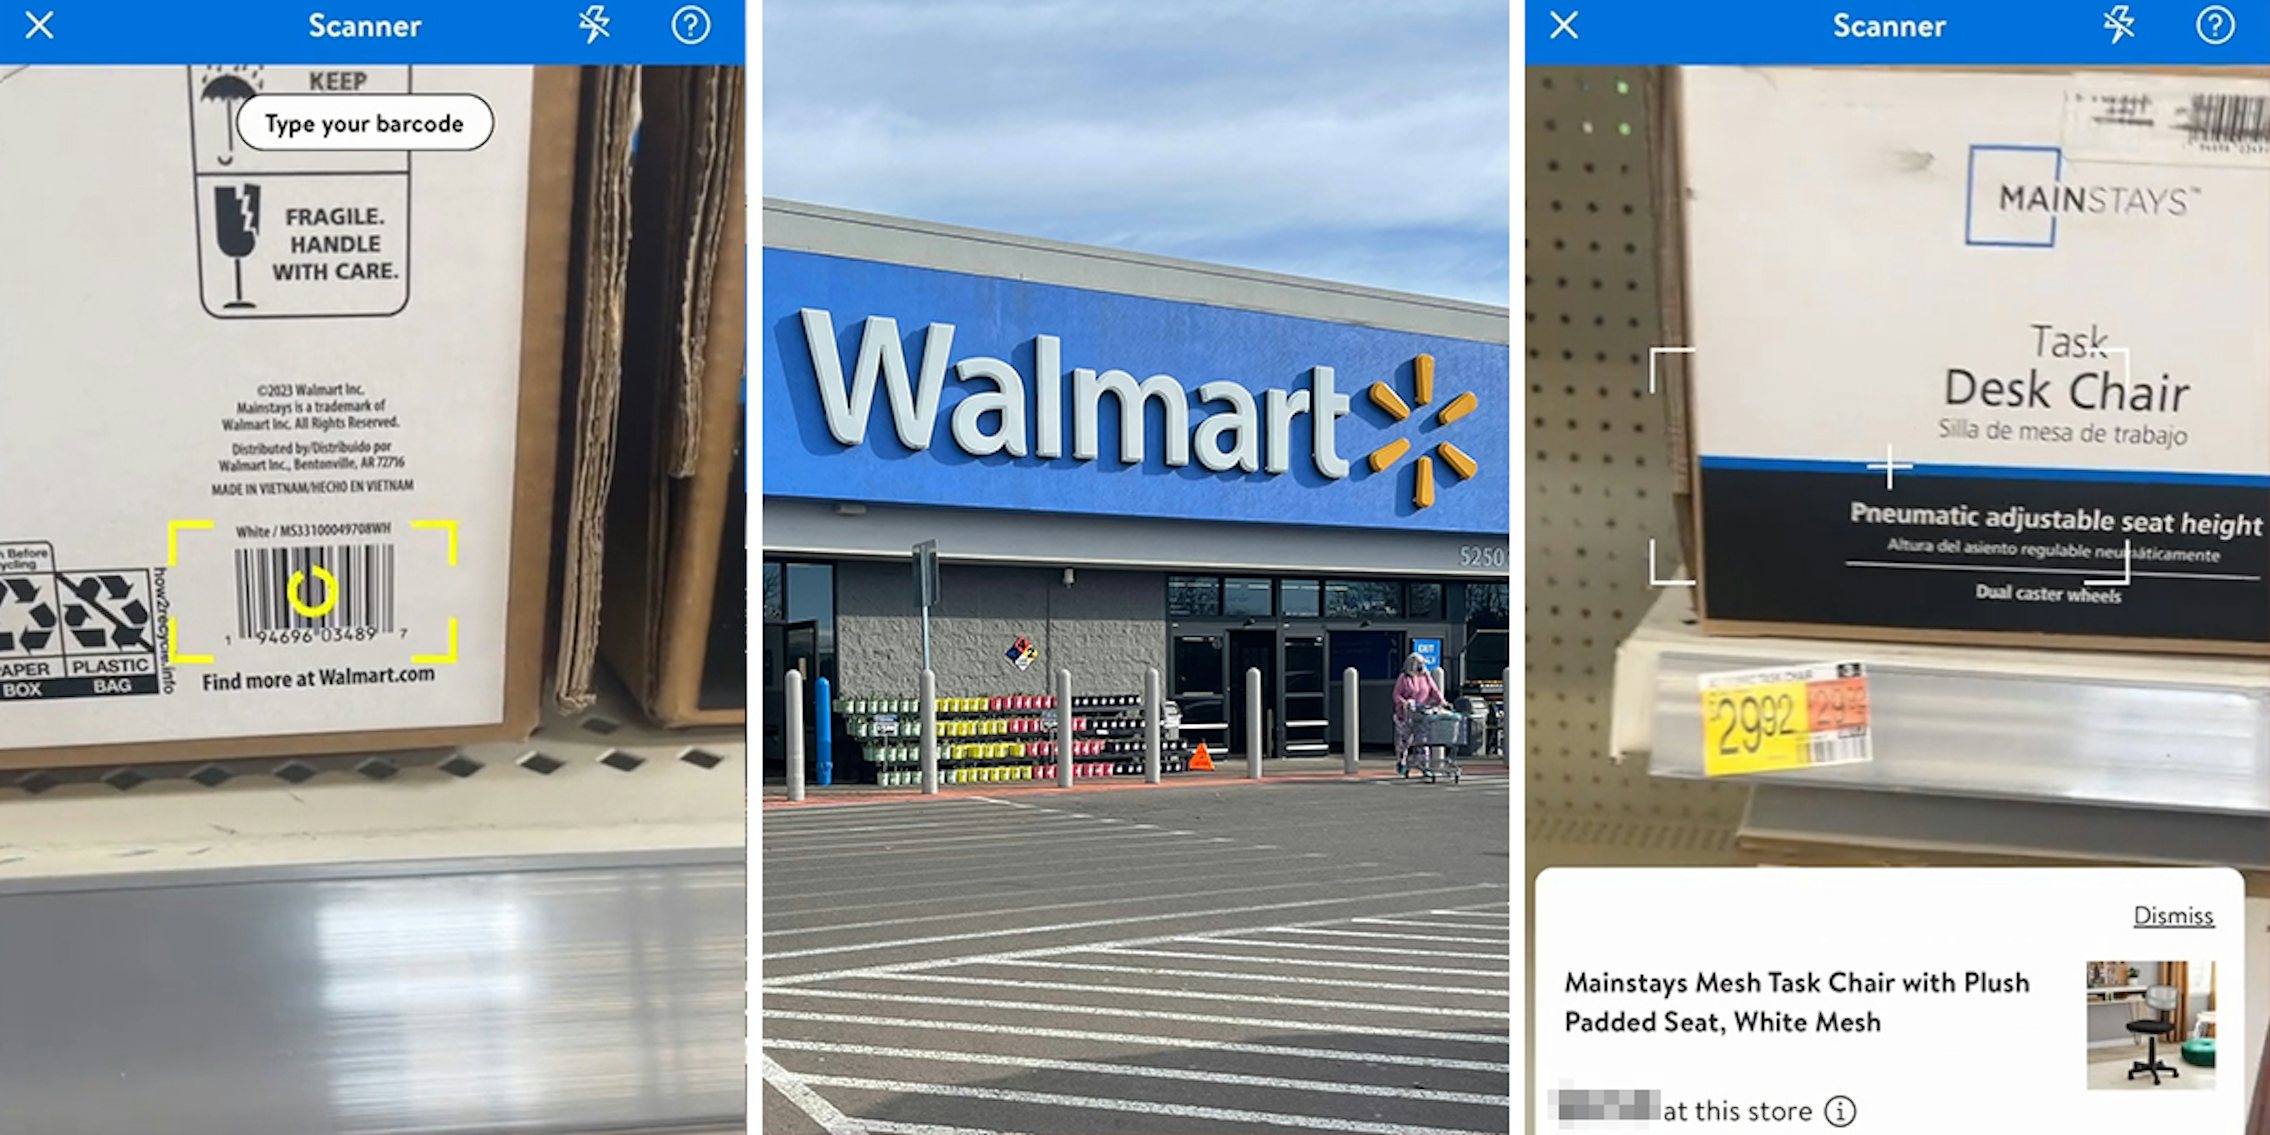 17 Walmart Clearance Secrets For Hidden Deals  Walmart clearance, Walmart  sales, Saving money frugal living